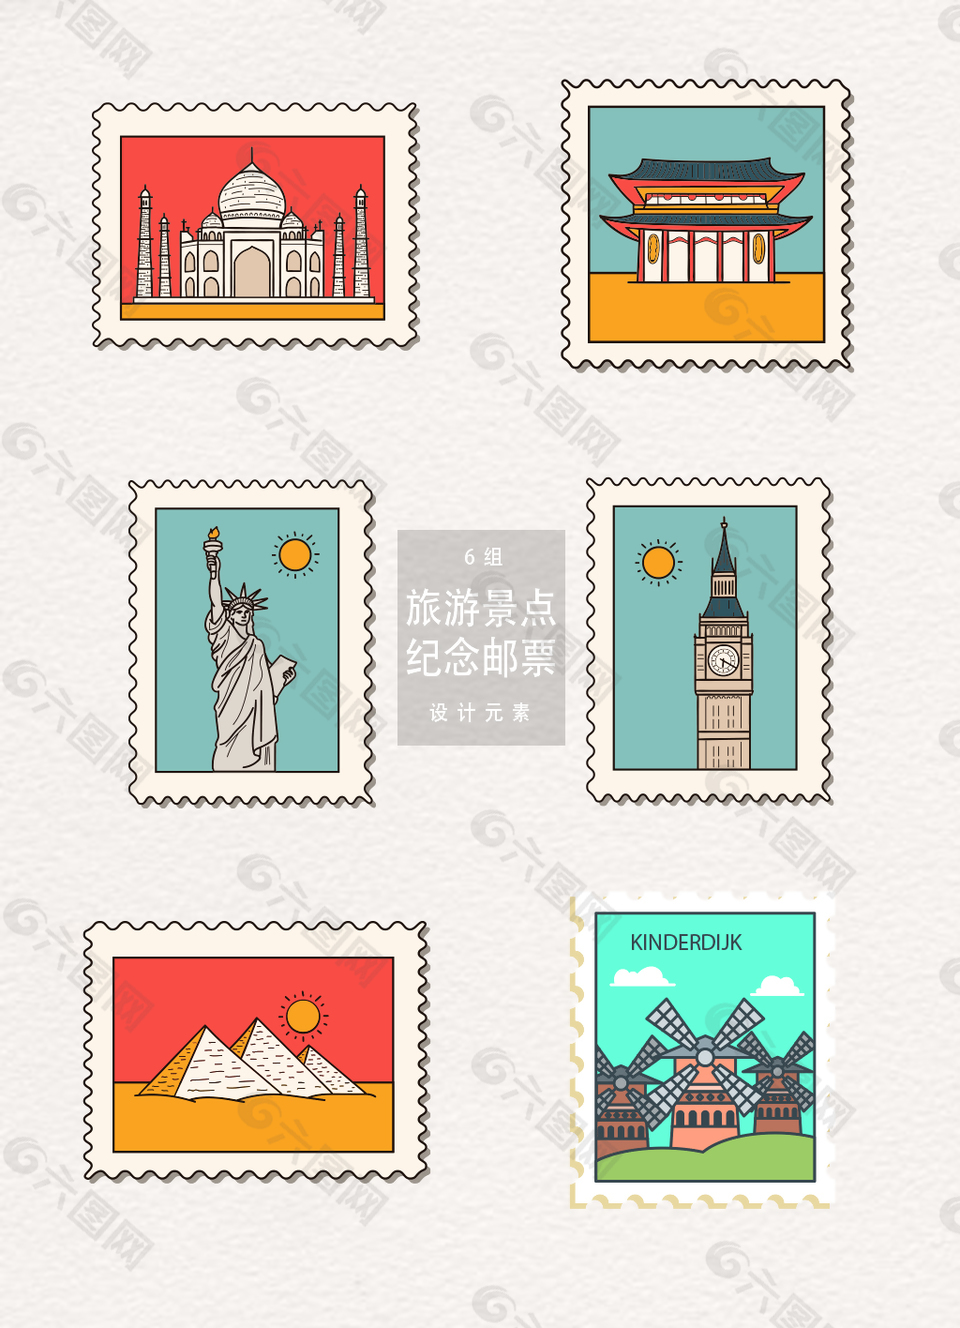 手绘旅游景点纪念邮票矢量素材